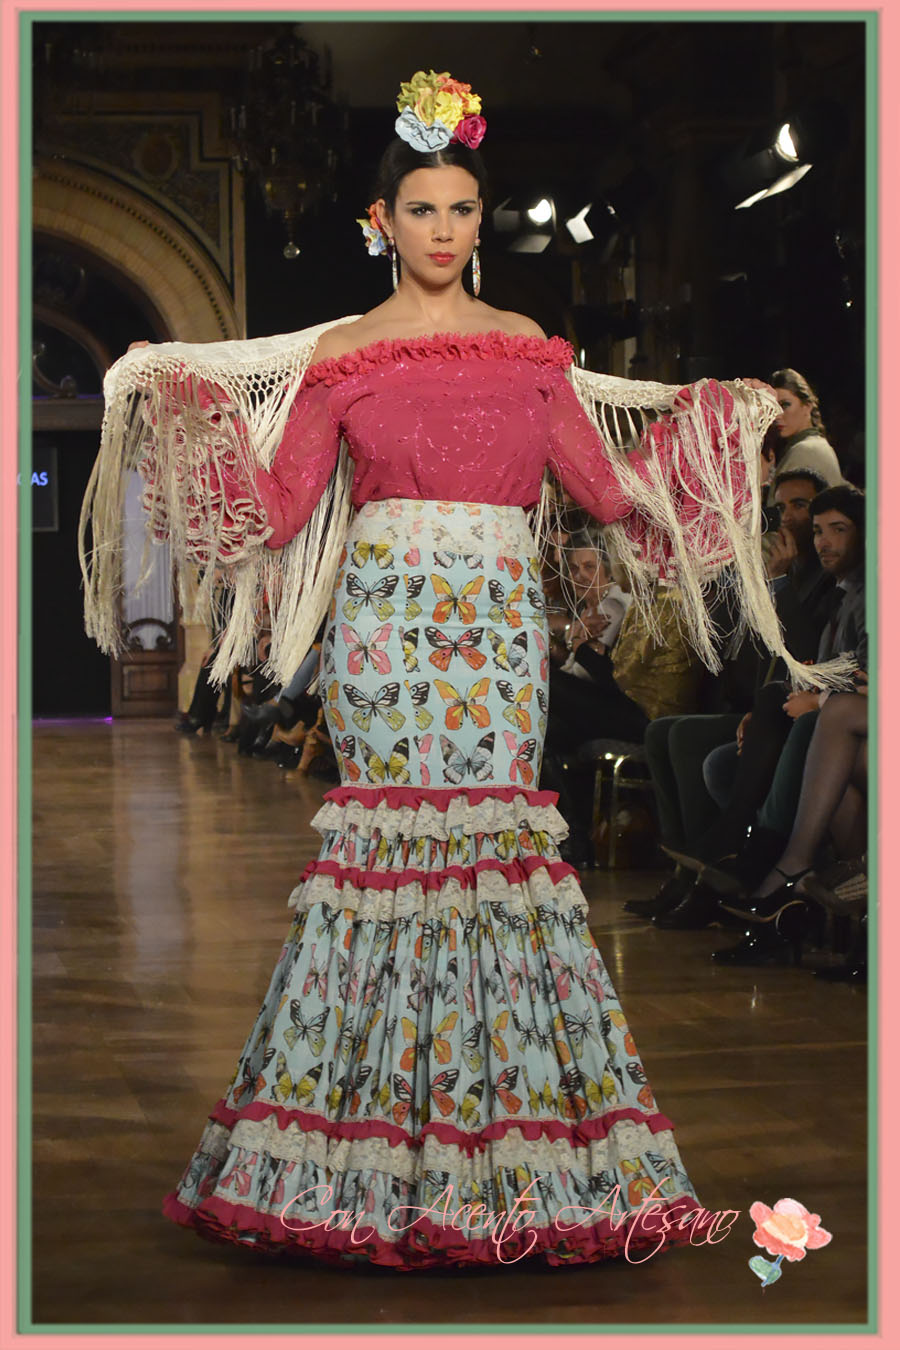 más lejos Sollozos saber Canasteros de Manuela Macias en We Love Flamenco 2015 - Acento Artesano |  Trajes de flamenca, Moda, Vestidos de Novia, Vestidos de Invitadas y Belleza